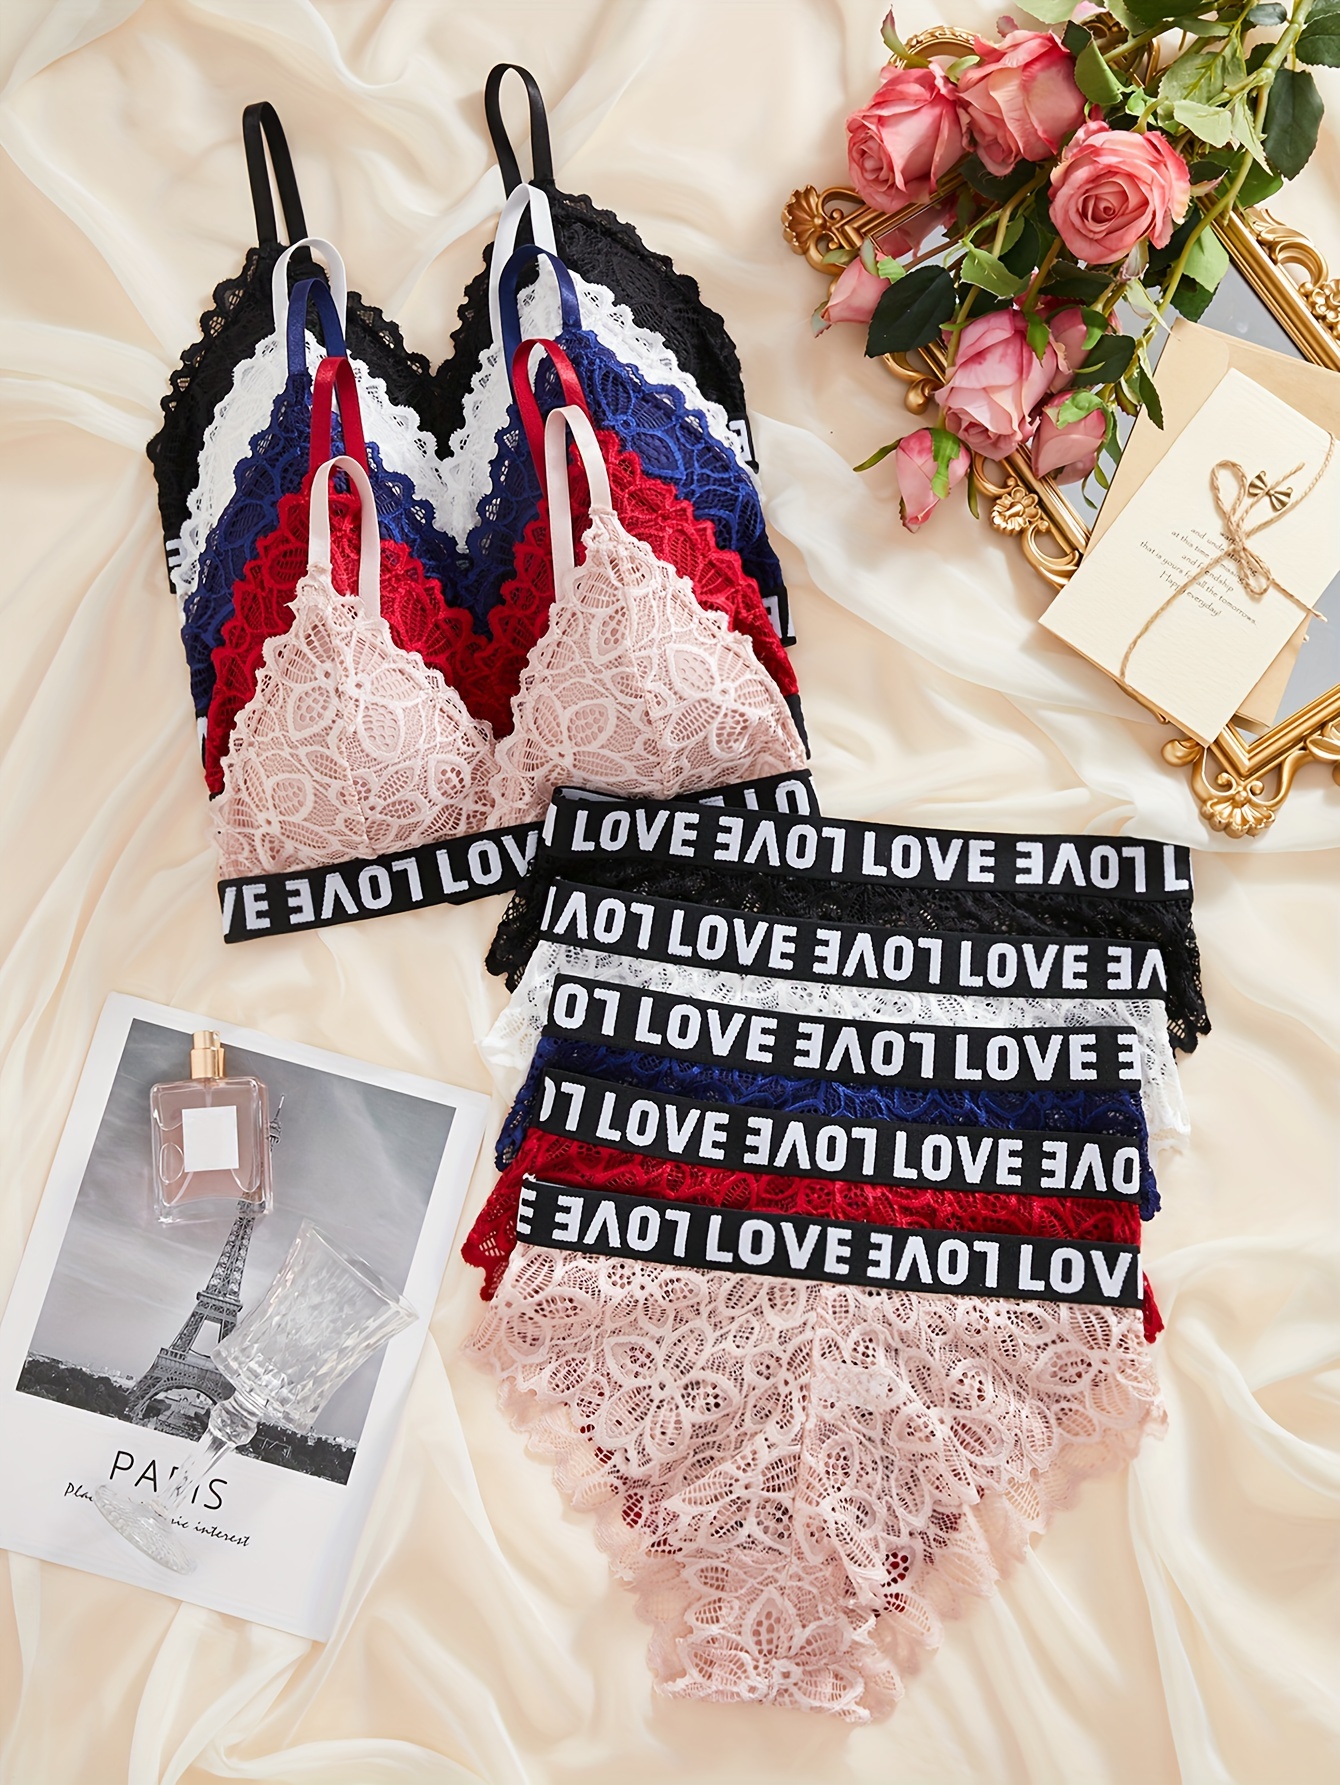 Velvet Bra & Panties, Double Straps Bra & Lace Trim Panties Lingerie Set,  Women's Lingerie & Underwear